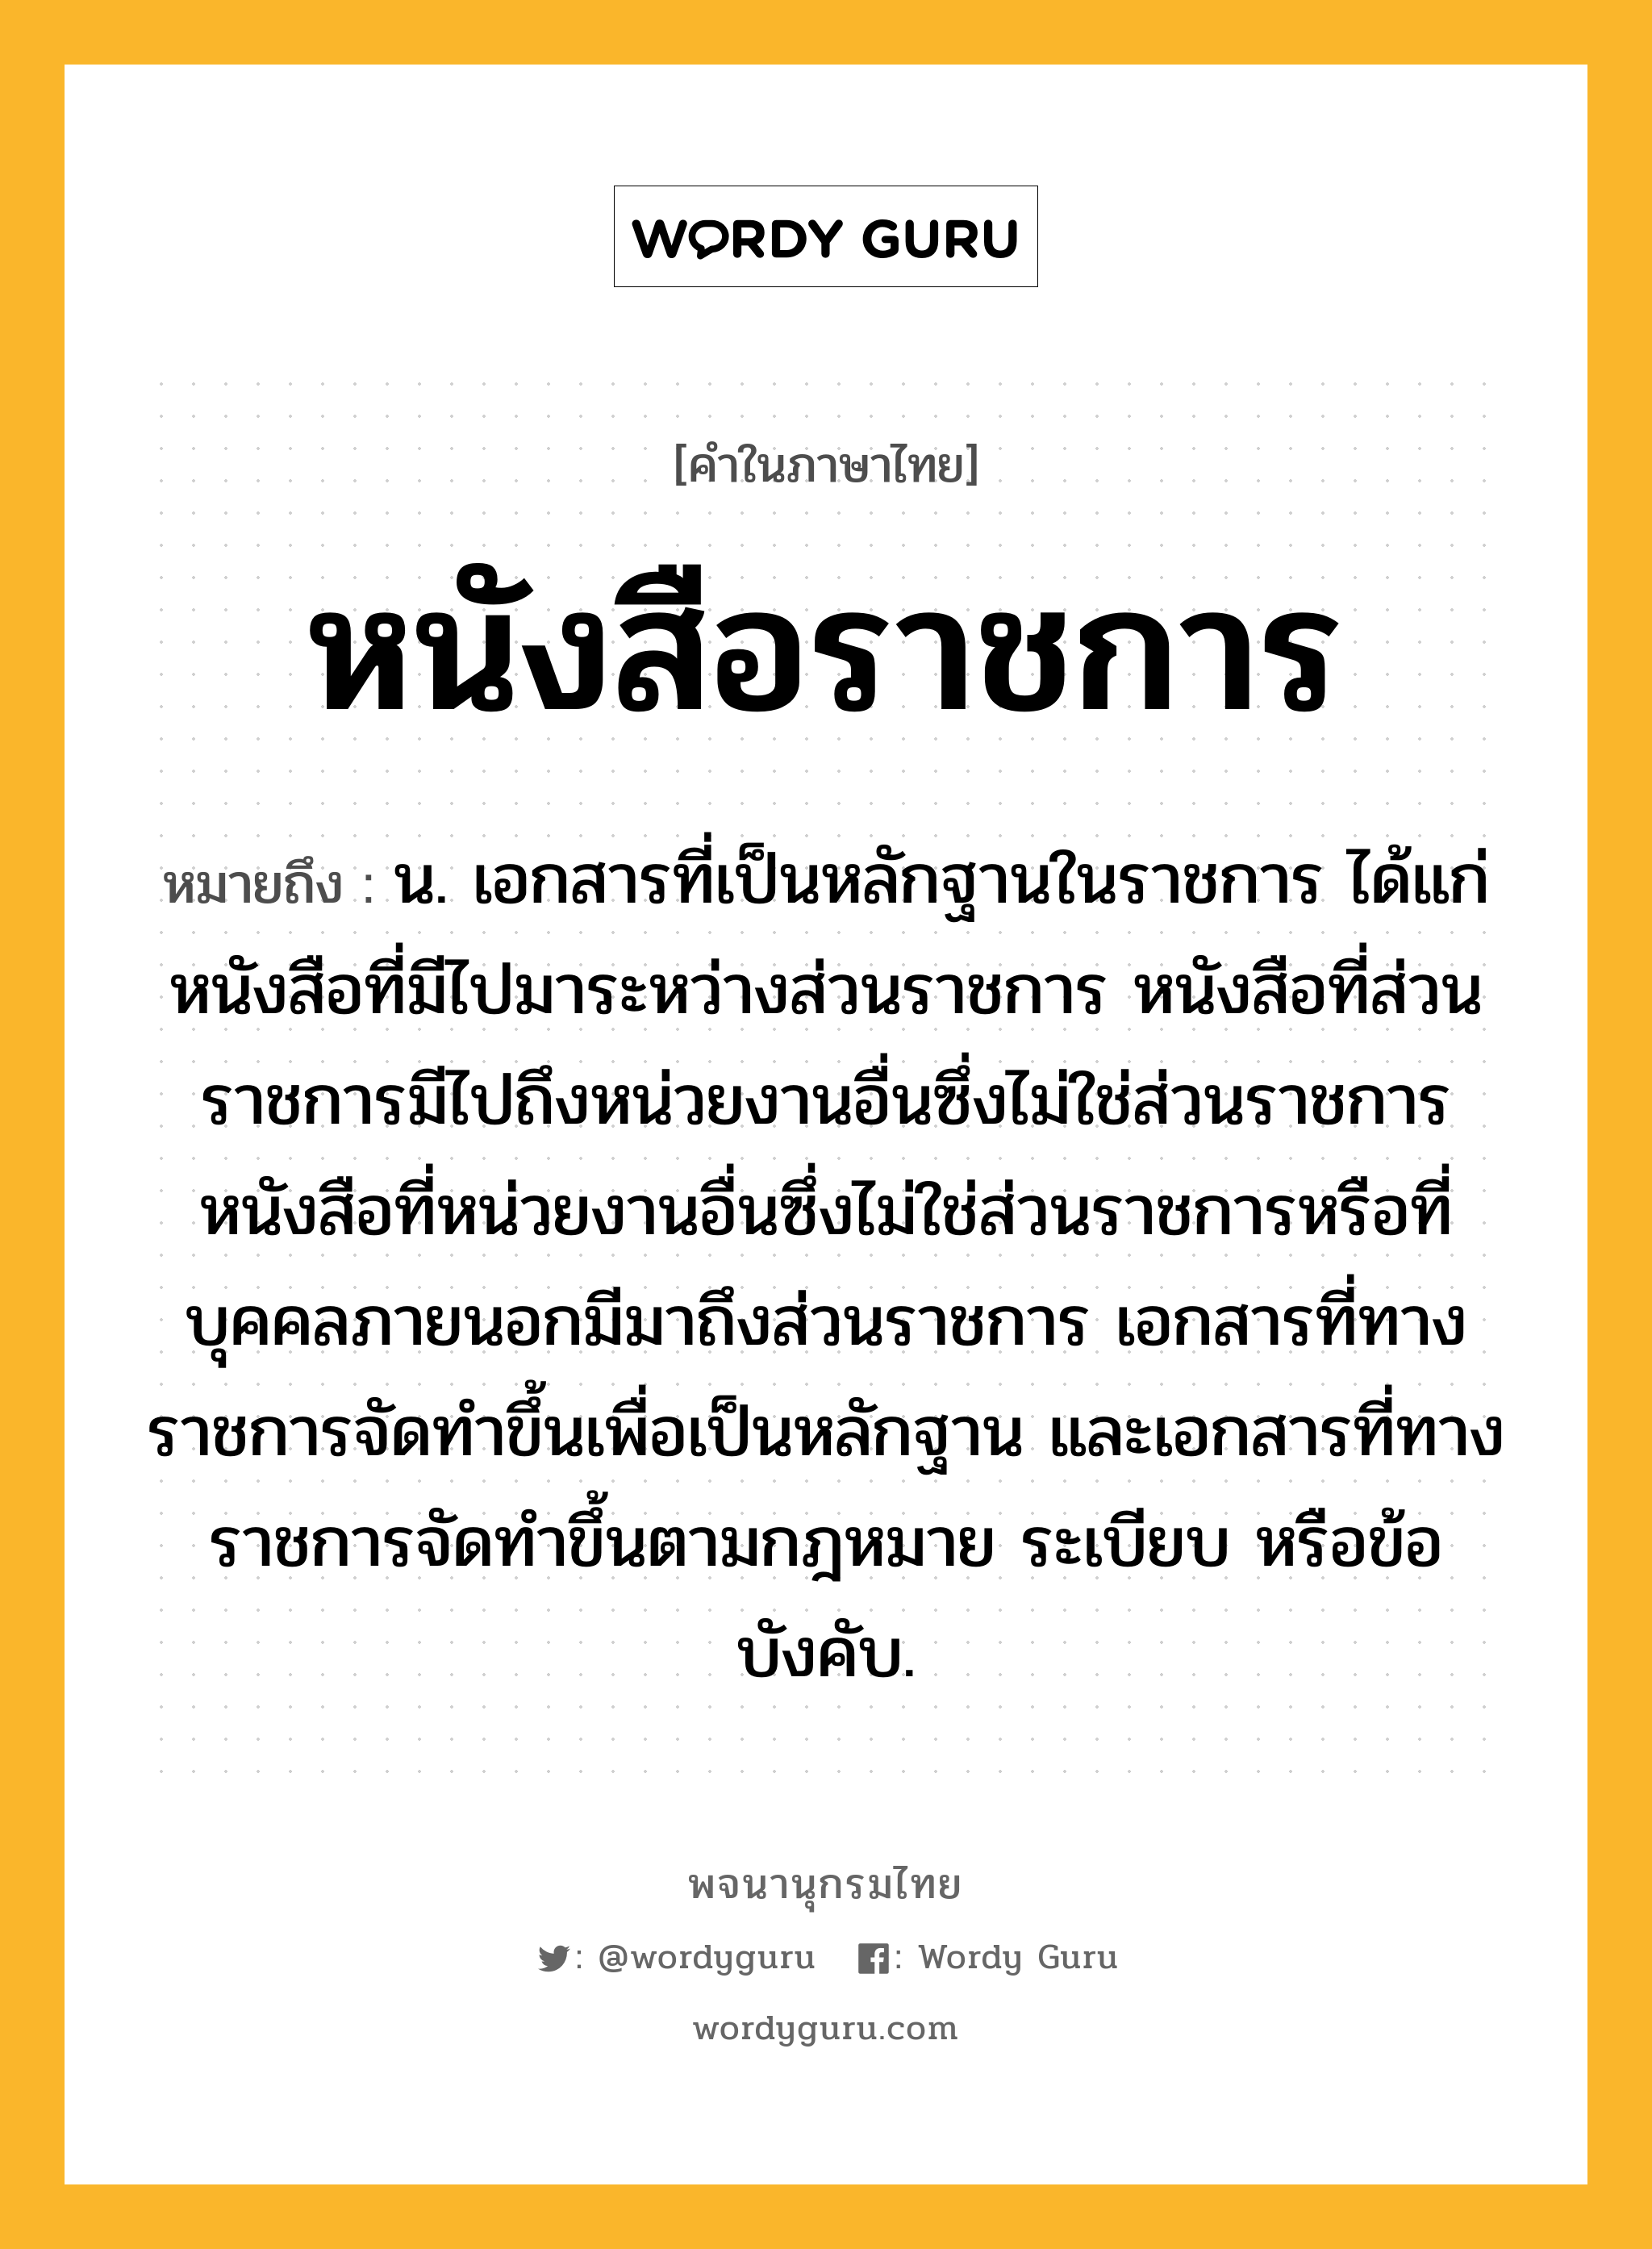 หนังสือราชการ หมายถึงอะไร?, คำในภาษาไทย หนังสือราชการ หมายถึง น. เอกสารที่เป็นหลักฐานในราชการ ได้แก่ หนังสือที่มีไปมาระหว่างส่วนราชการ หนังสือที่ส่วนราชการมีไปถึงหน่วยงานอื่นซึ่งไม่ใช่ส่วนราชการ หนังสือที่หน่วยงานอื่นซึ่งไม่ใช่ส่วนราชการหรือที่บุคคลภายนอกมีมาถึงส่วนราชการ เอกสารที่ทางราชการจัดทำขึ้นเพื่อเป็นหลักฐาน และเอกสารที่ทางราชการจัดทำขึ้นตามกฎหมาย ระเบียบ หรือข้อบังคับ.